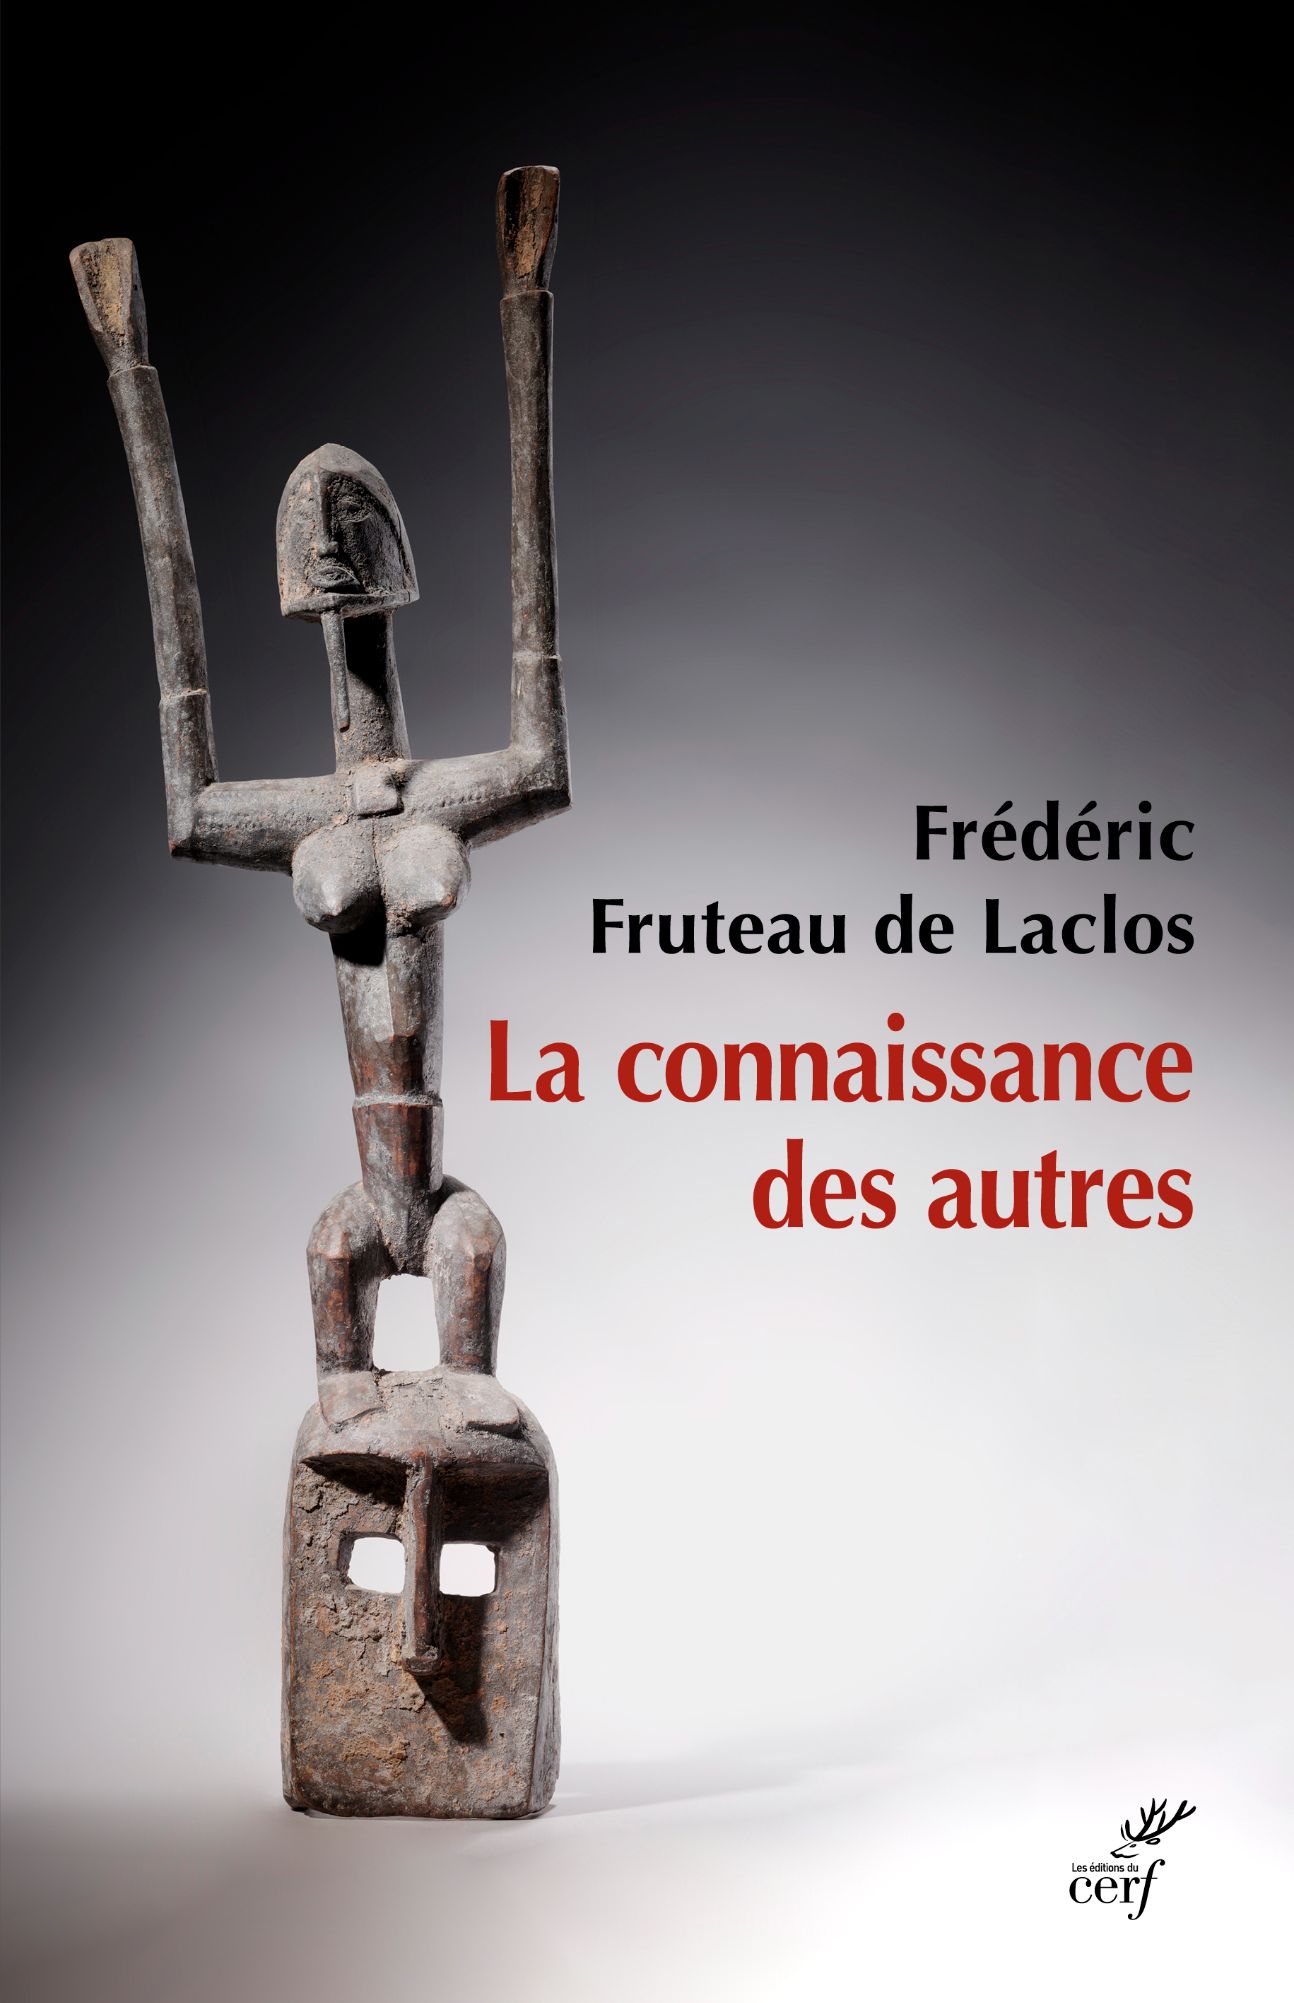 Frédéric Fruteau de Laclos, La connaissance des autres